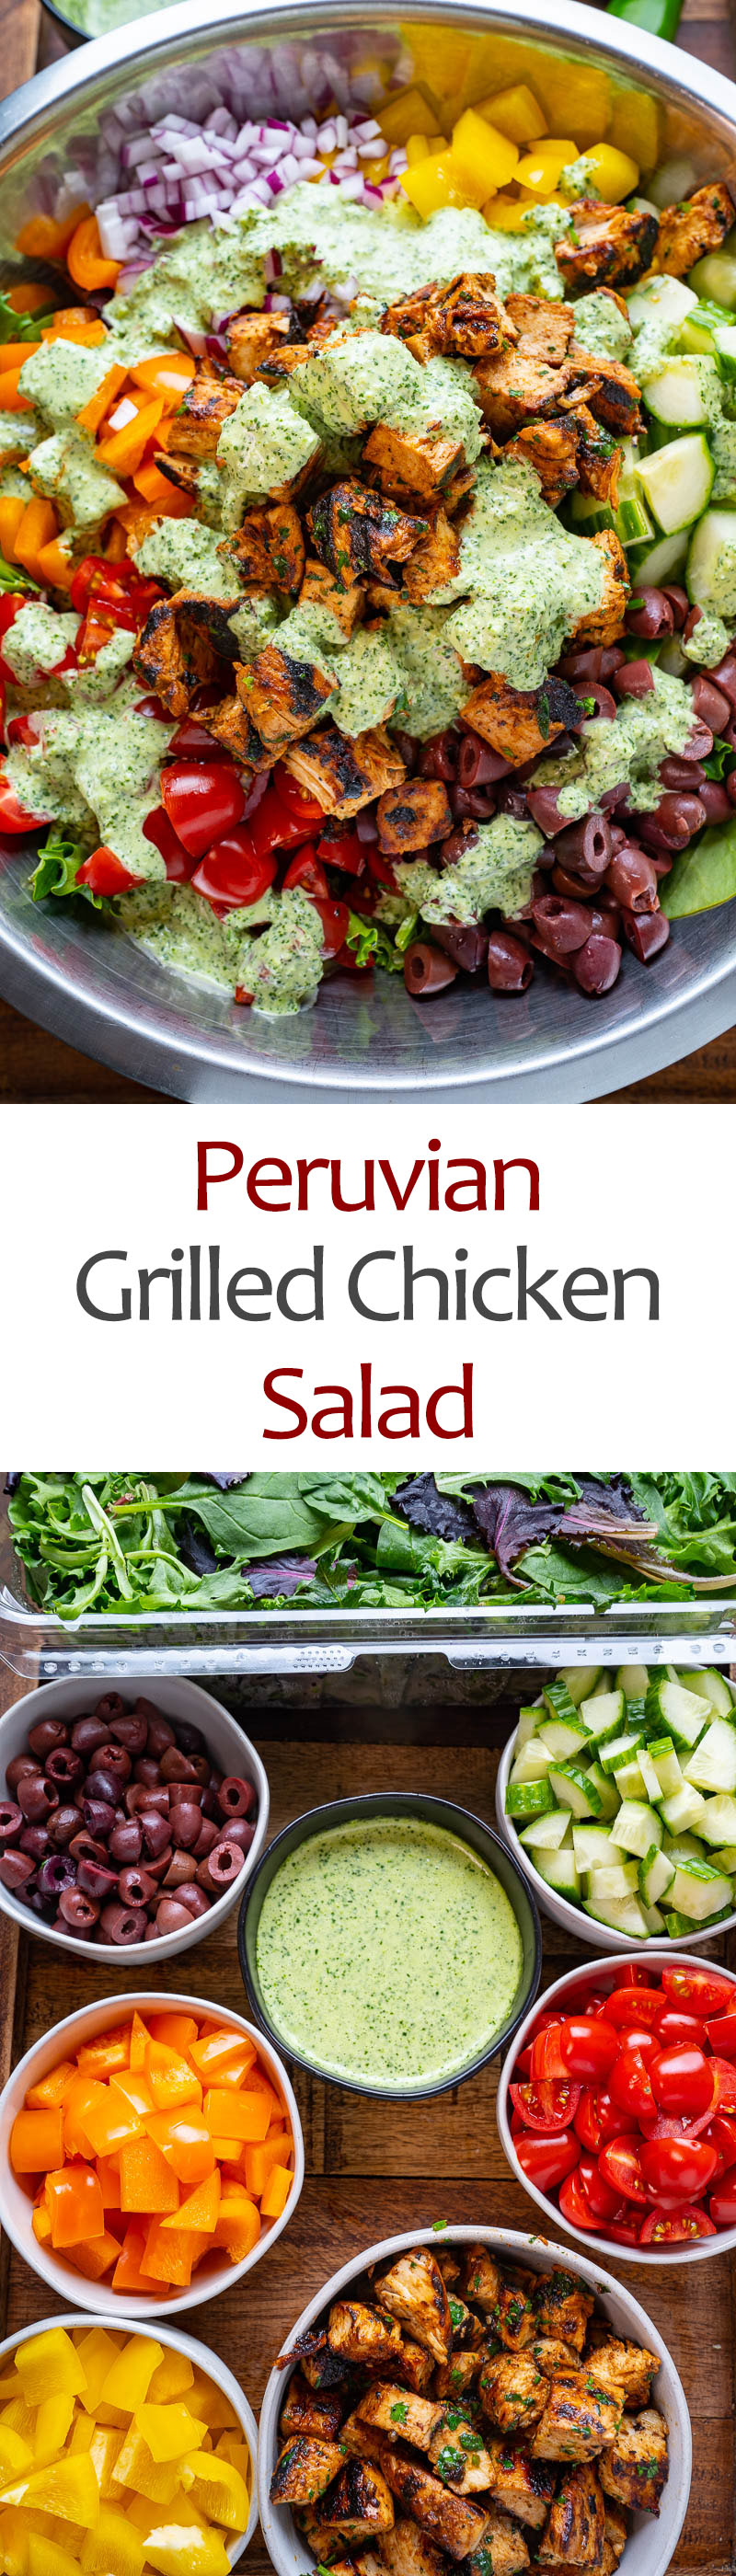 Peruvian Grilled Chicken Salad